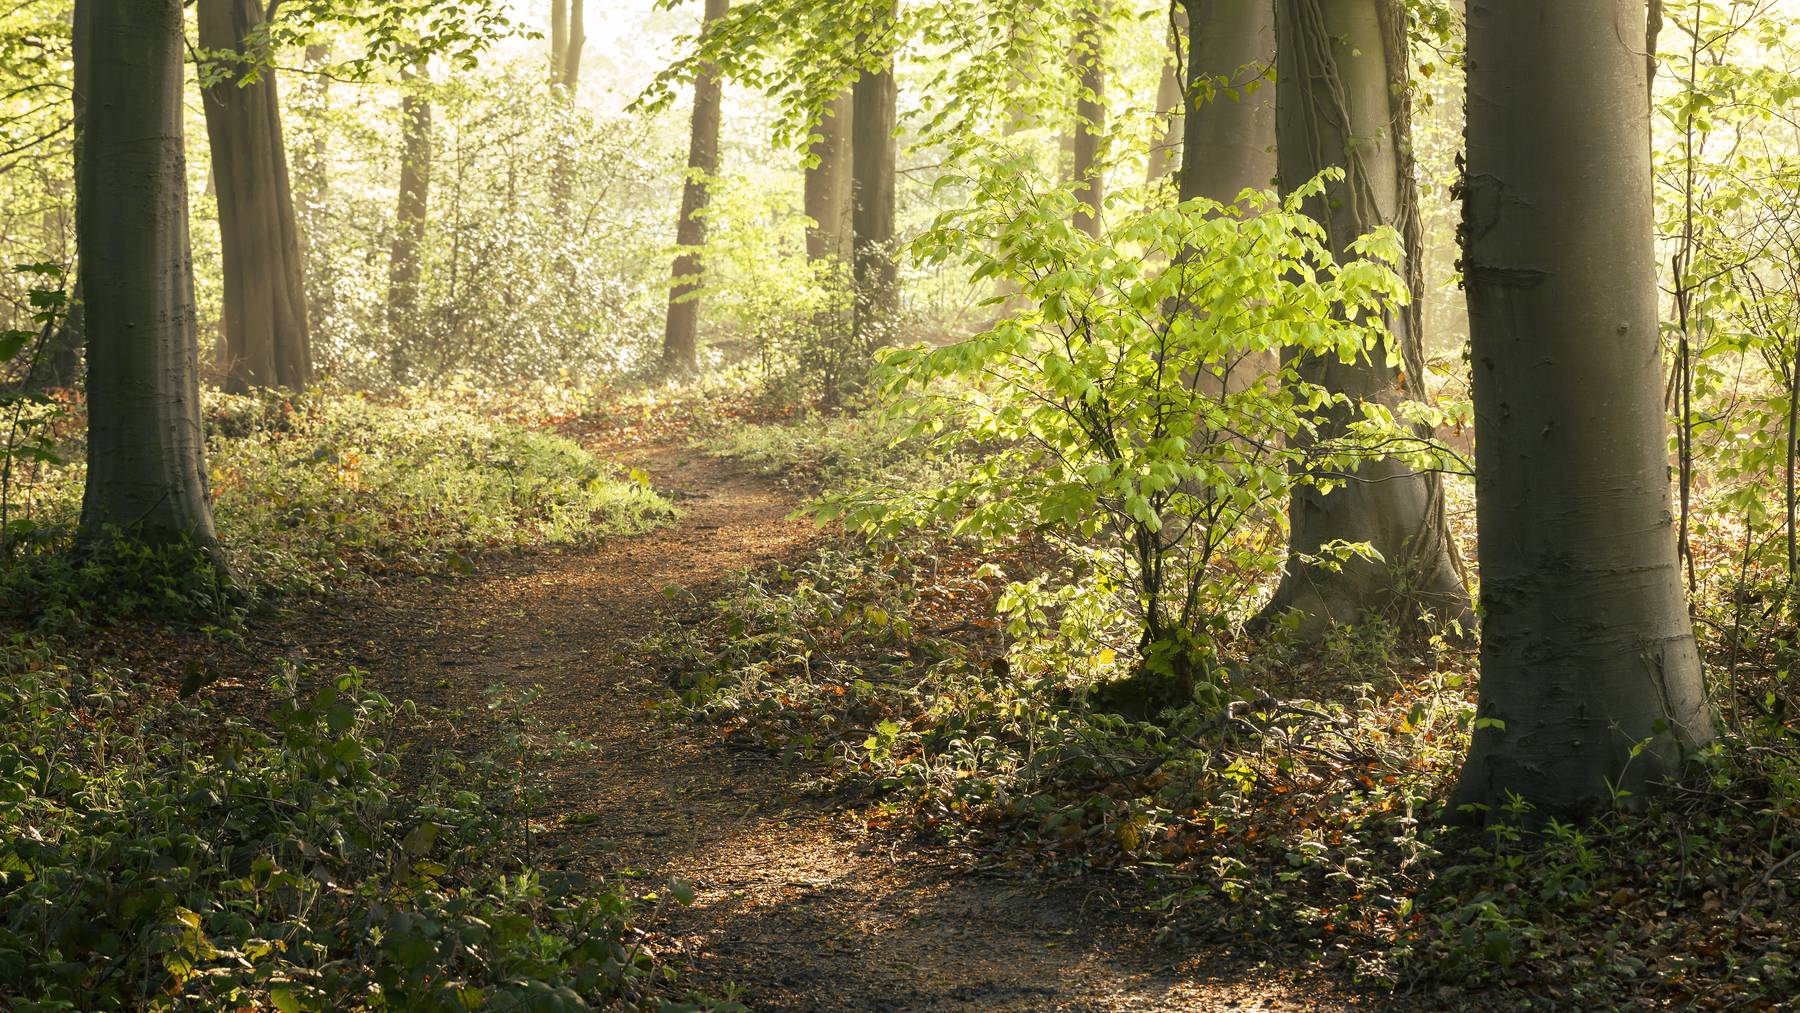 Als Holzweg wird der Weg bezeichnet, der dazu dient, gefälltes Holz aus dem Wald zu schaffen.